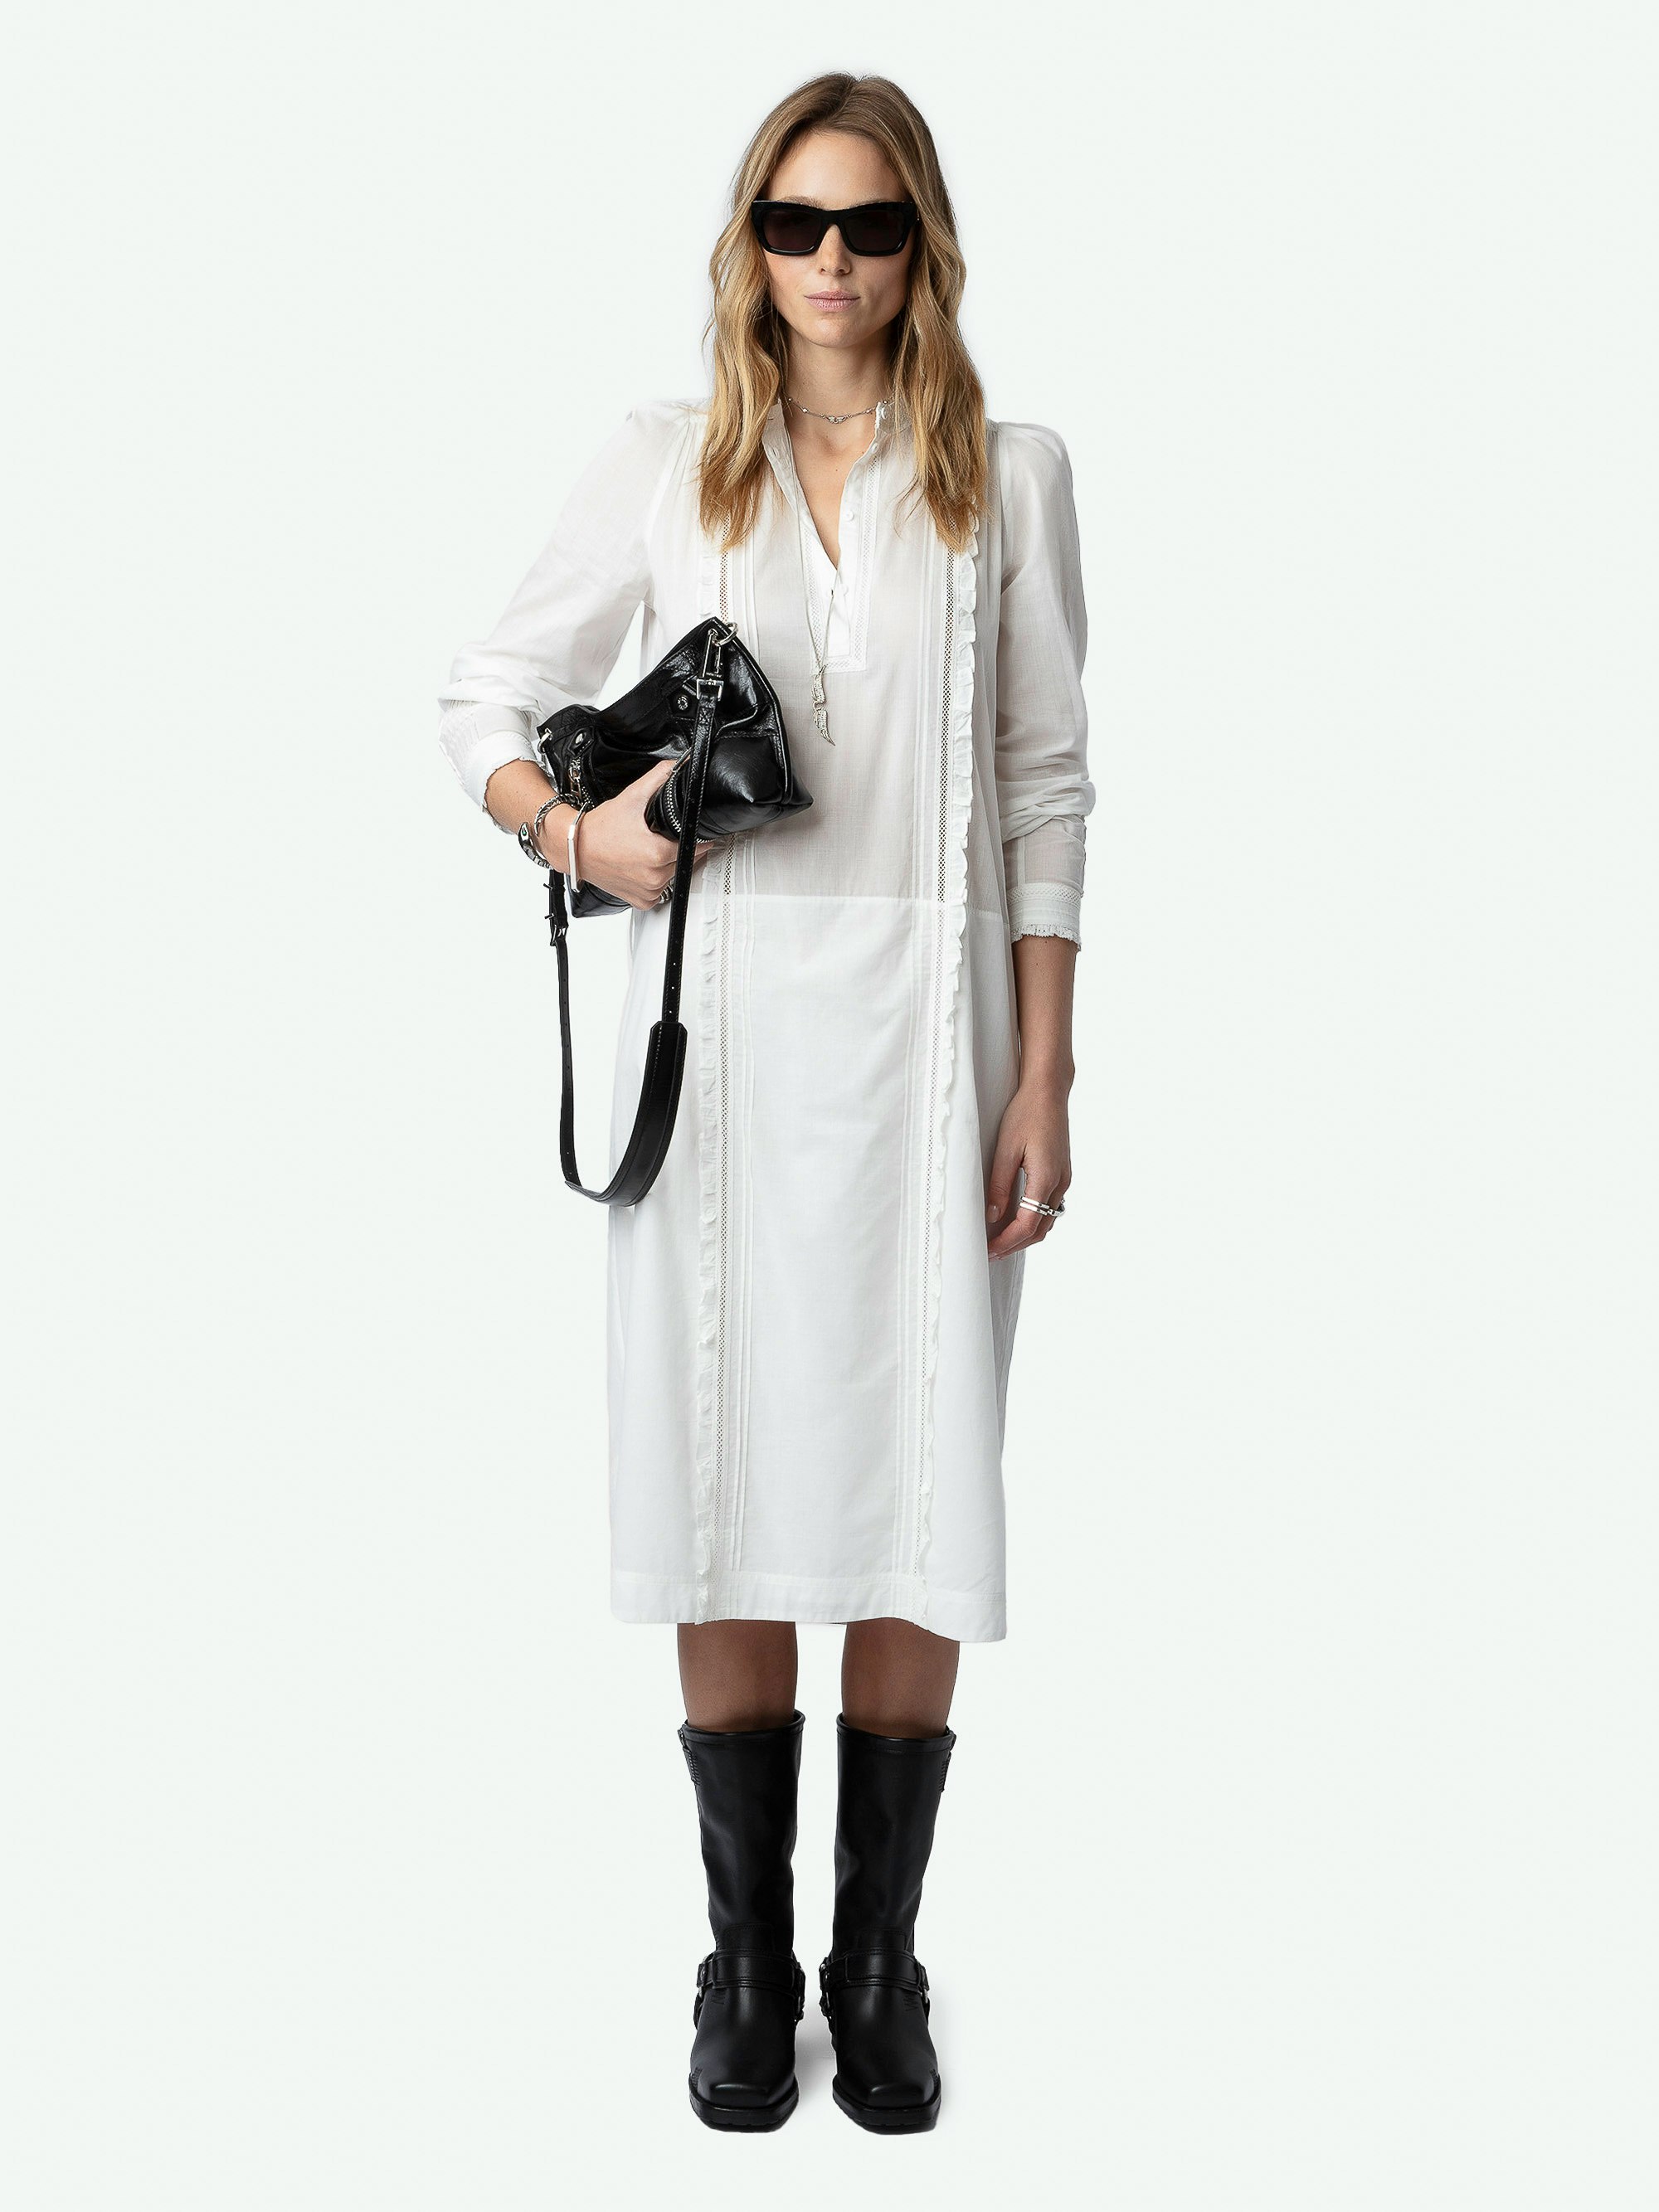 Kleid Ritchil - Halblanges, weißes Kleid aus Baumwollvoile mit langen Ärmeln, abnehmbarem Gürtel, Spitze und Volants.